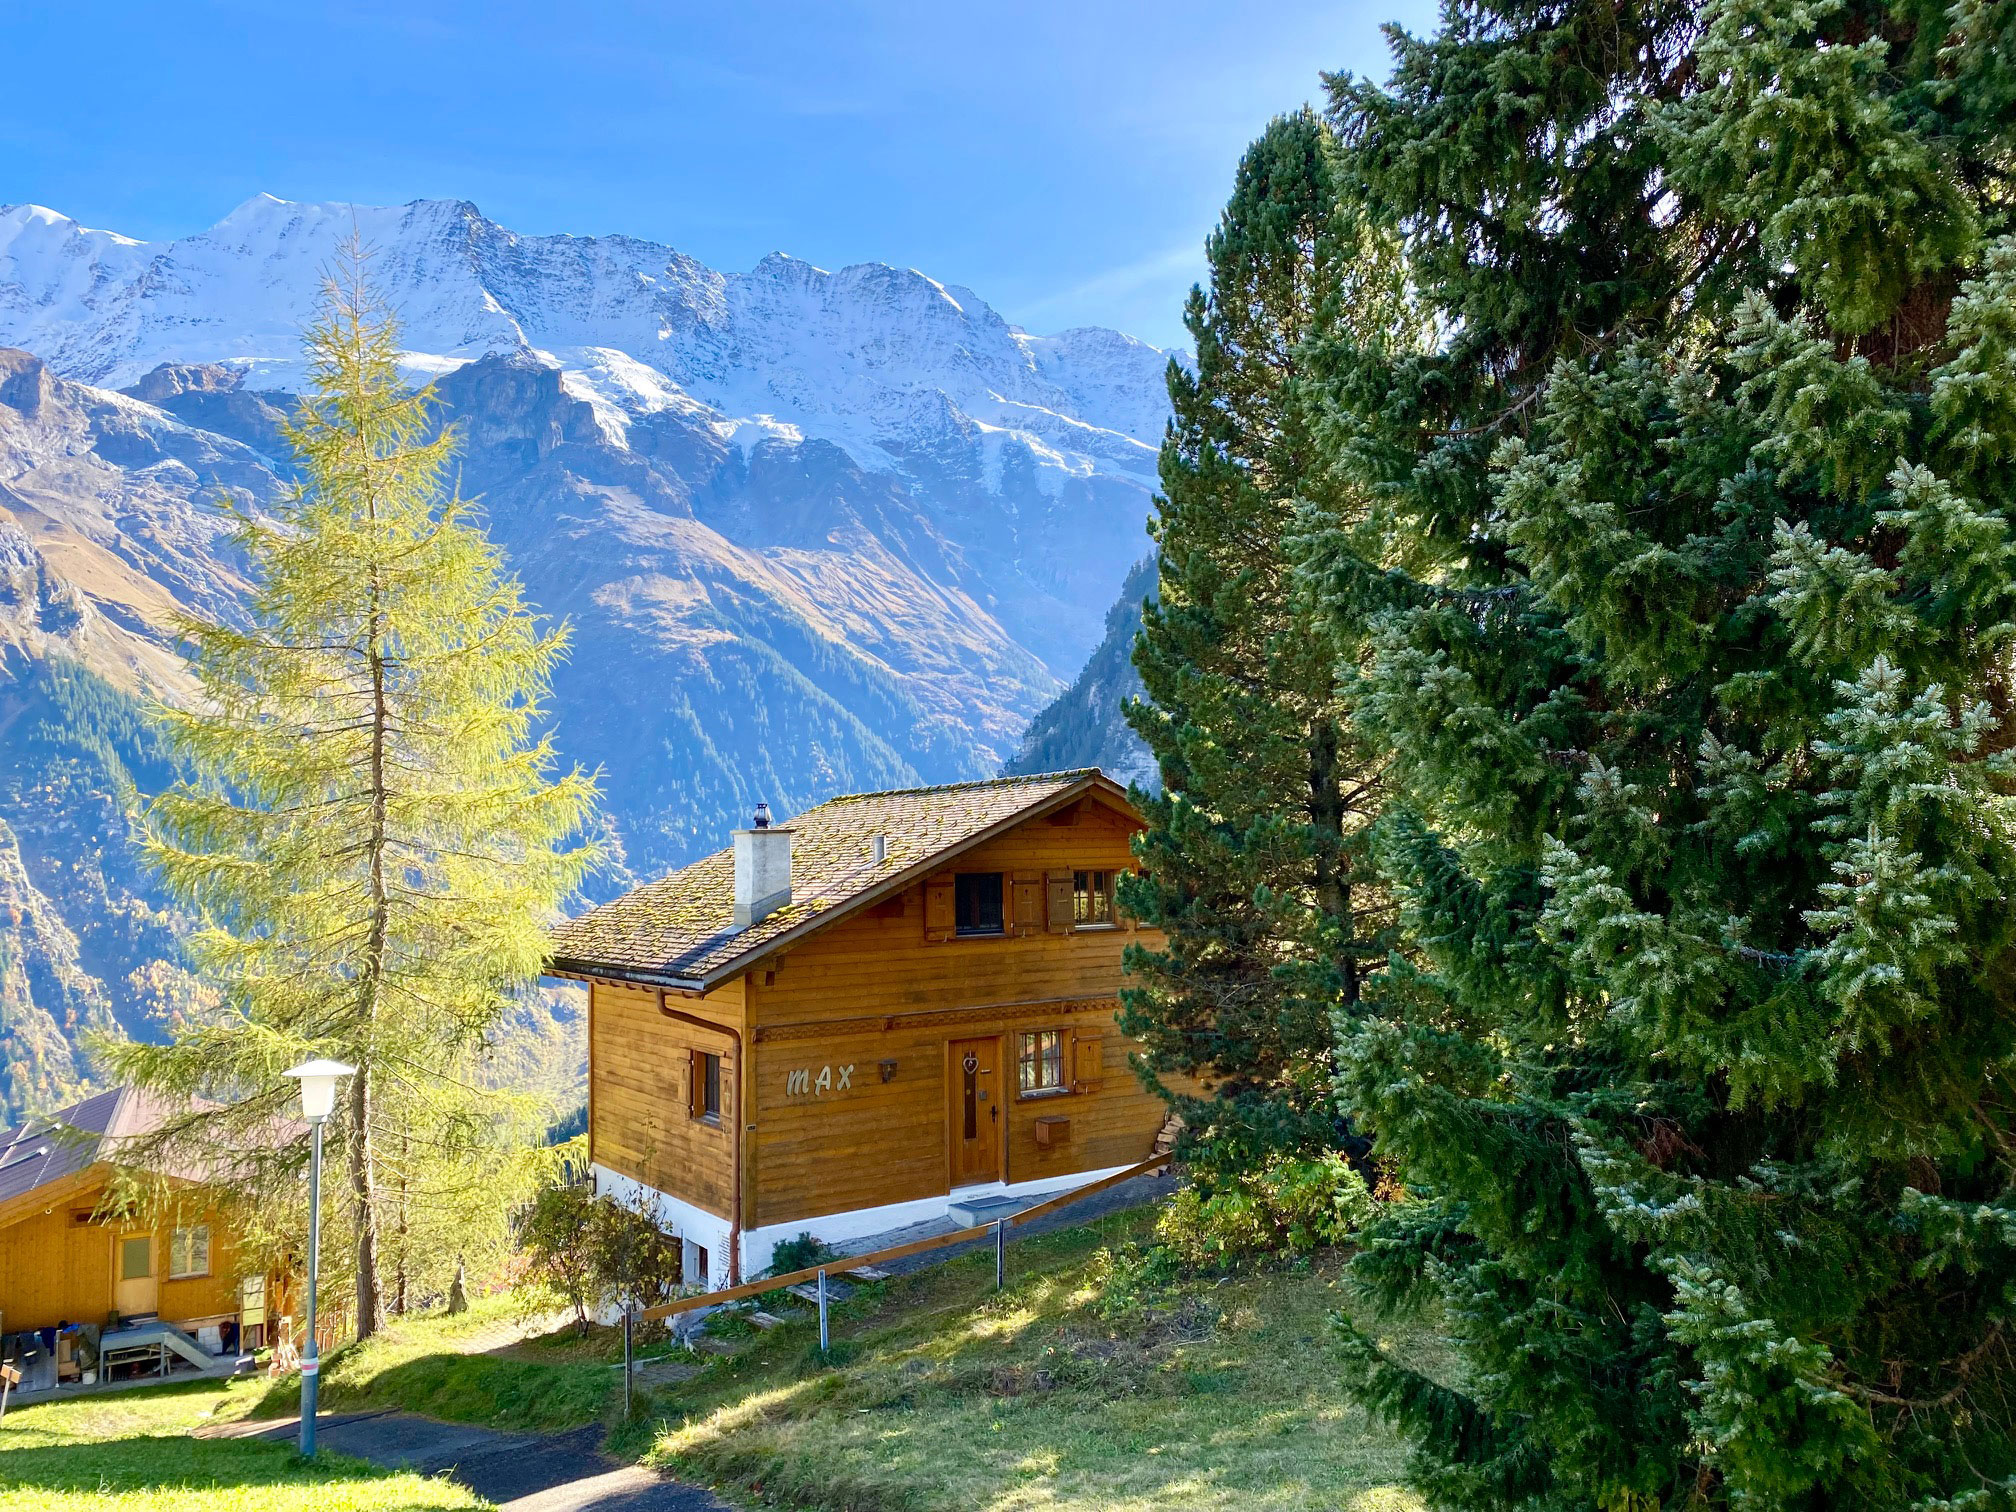 Best of Interlaken & Jungfrau Region 2 Days Private Tour (from Zurich)